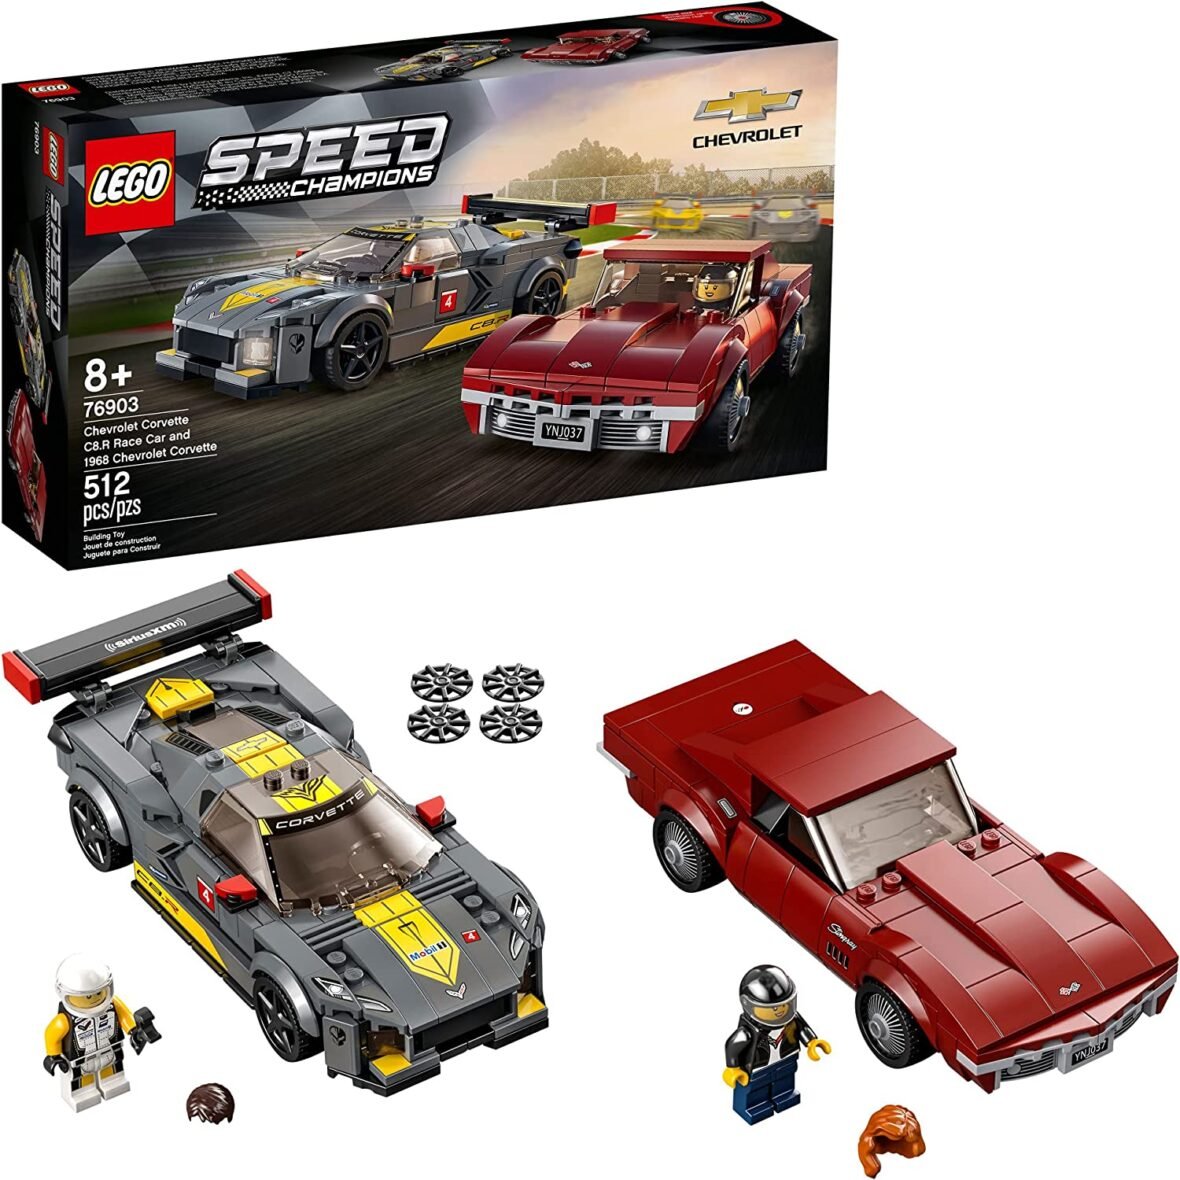 LEGO Speed Champions Chevrolet Corvette C8.R Race Car and 1968 Chevrolet Corvette 76903 Building Kit (512 Pieces)